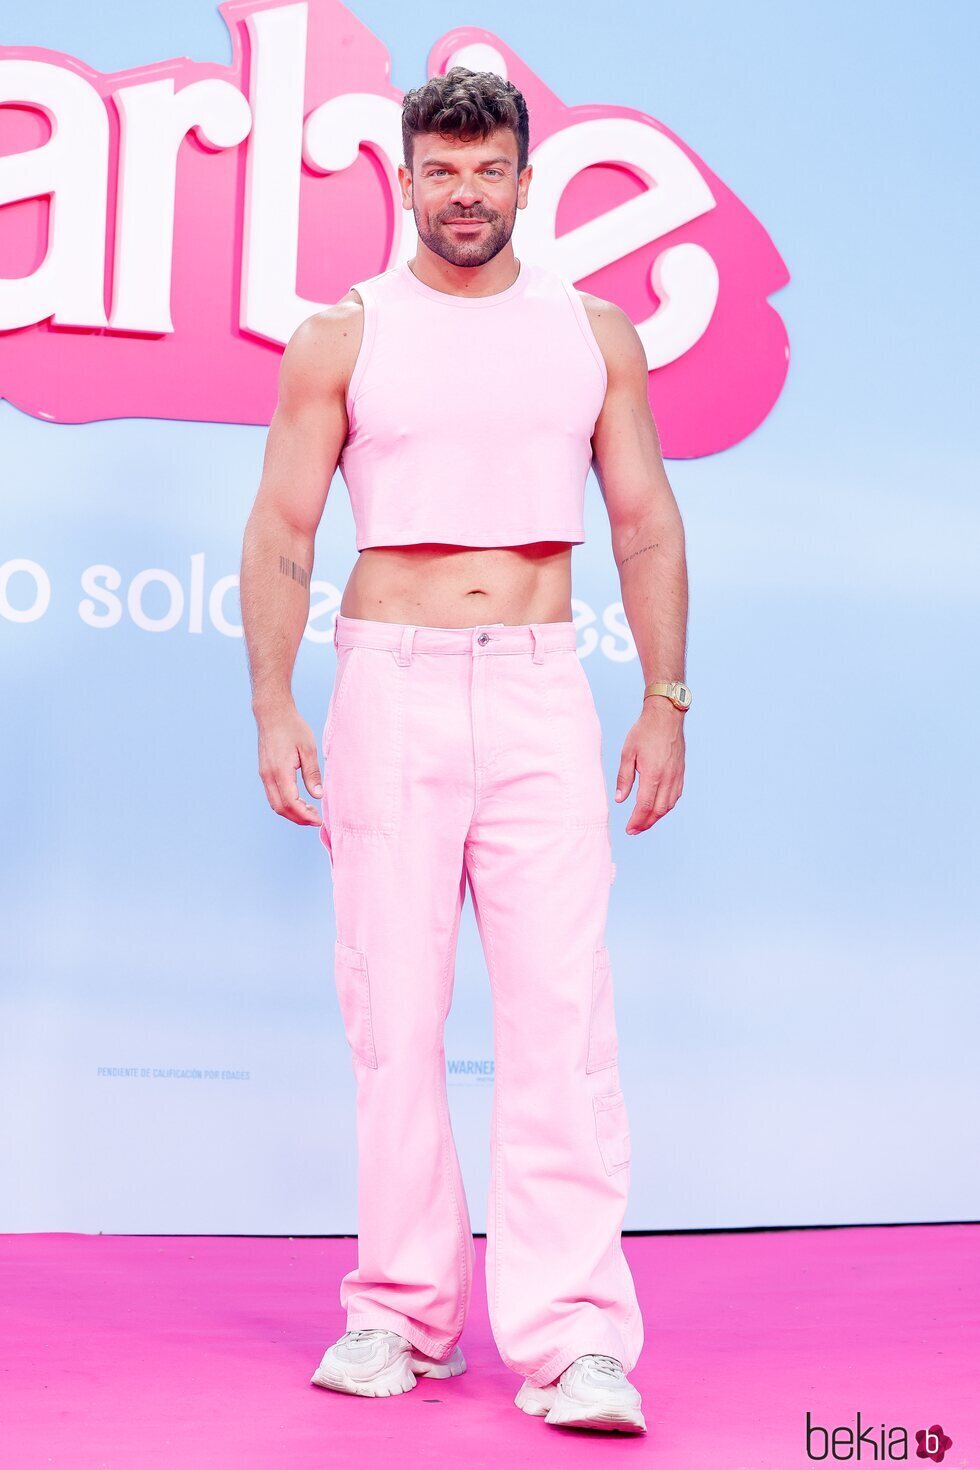 Ricky Merino en la premiere de 'Barbie' en Madrid